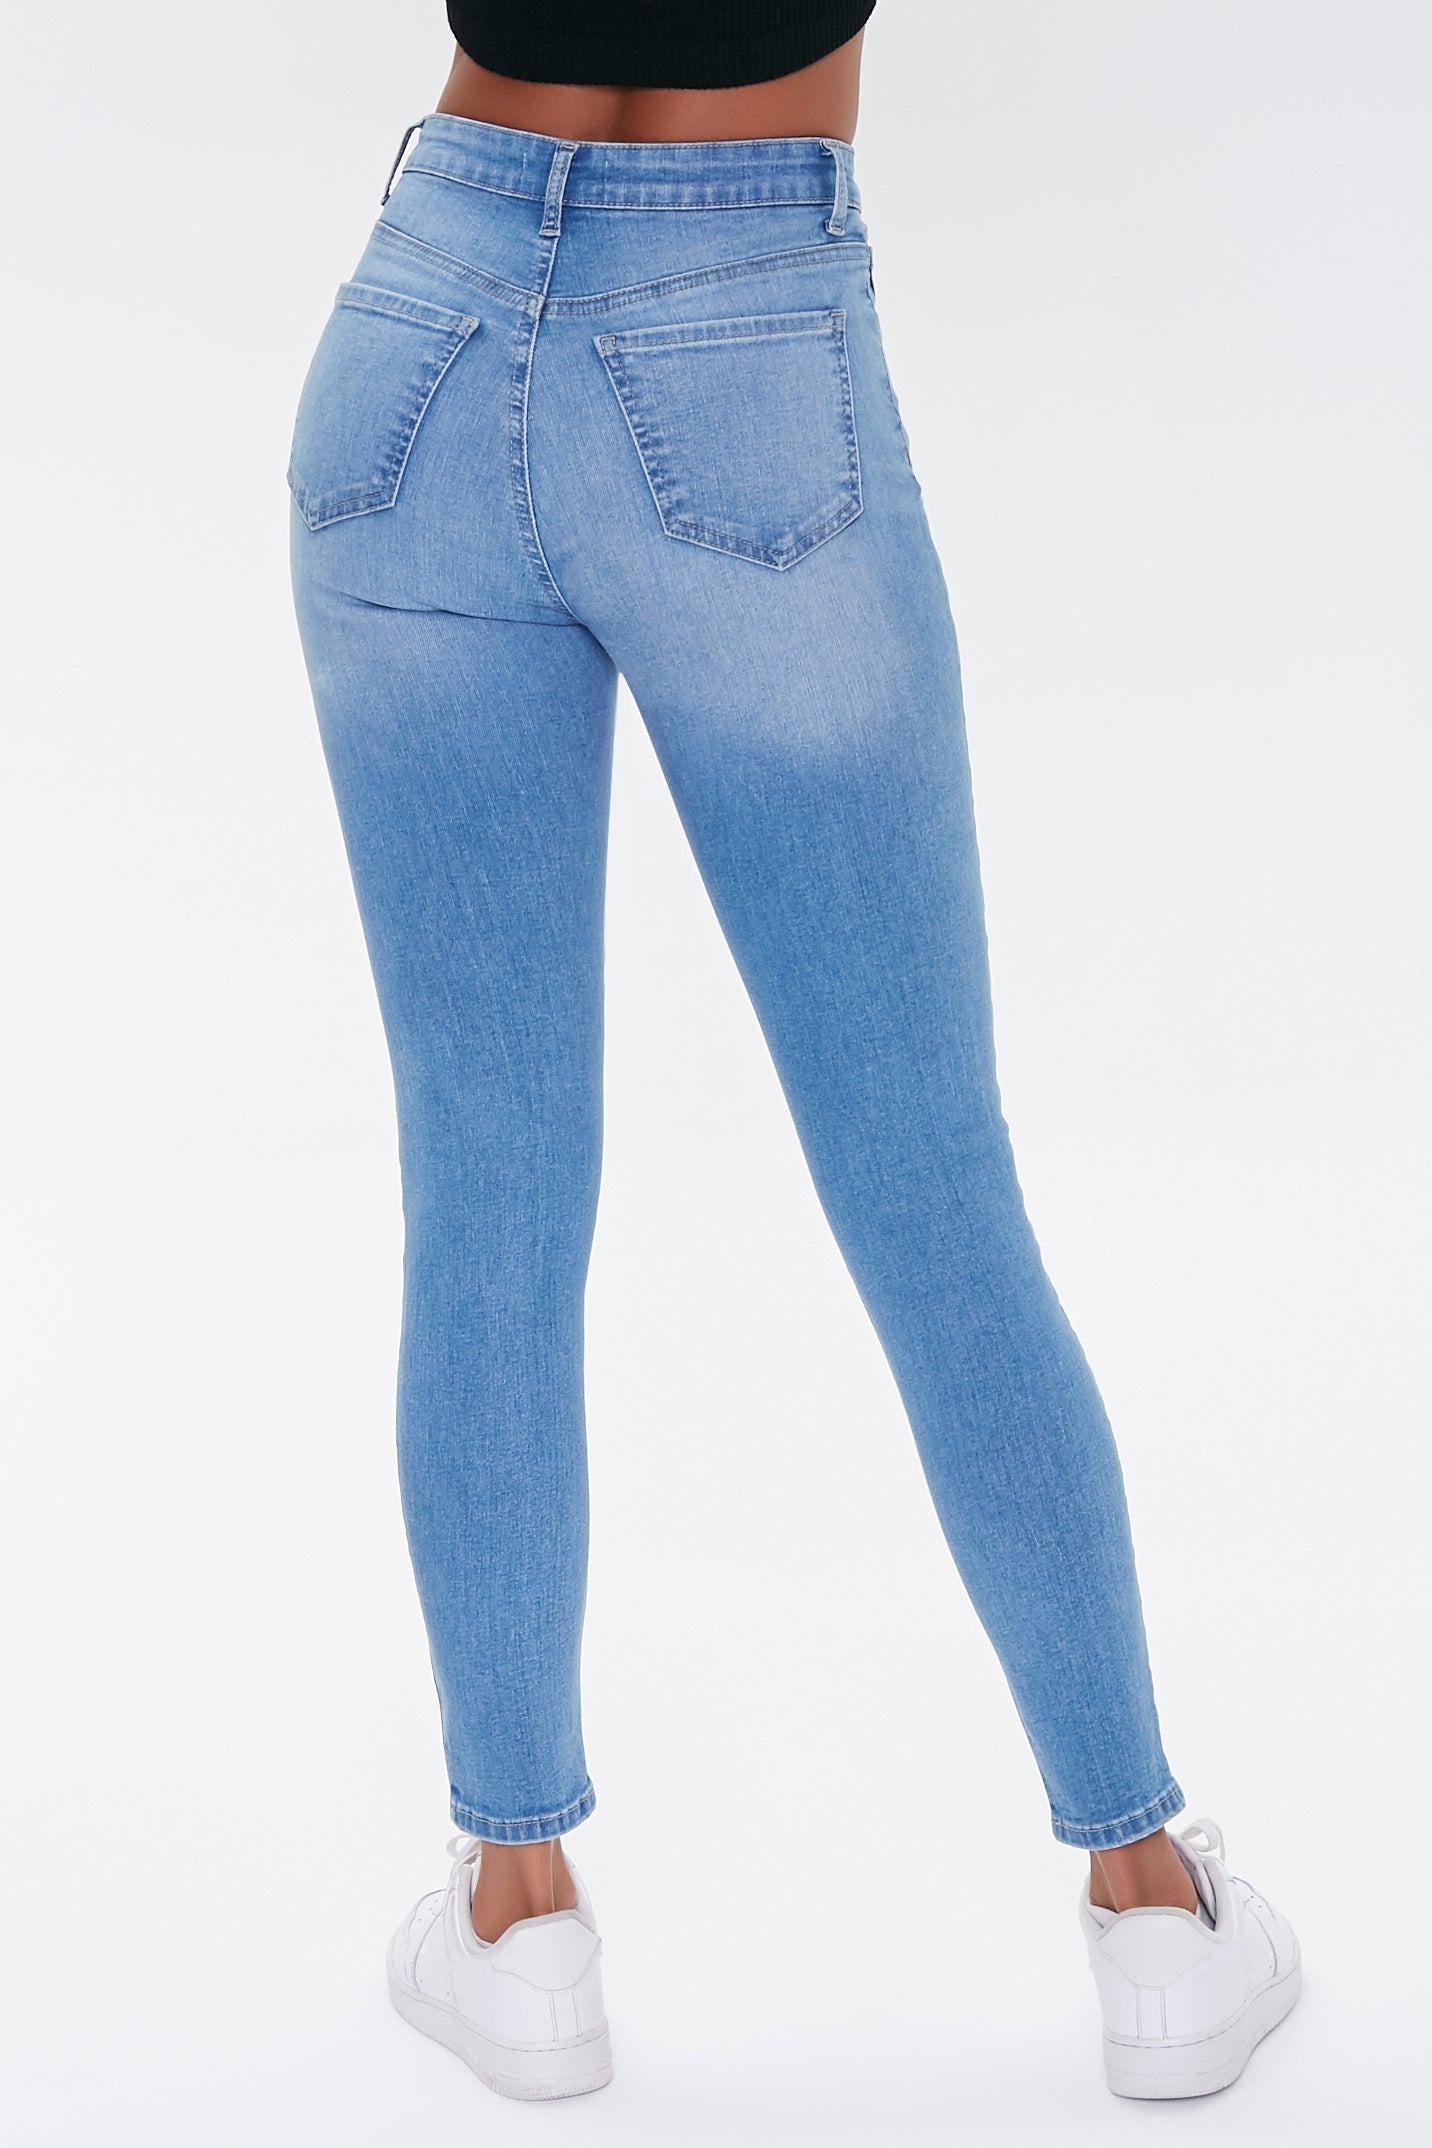 Mediumdenim Mid-Rise Skinny Jeans 4